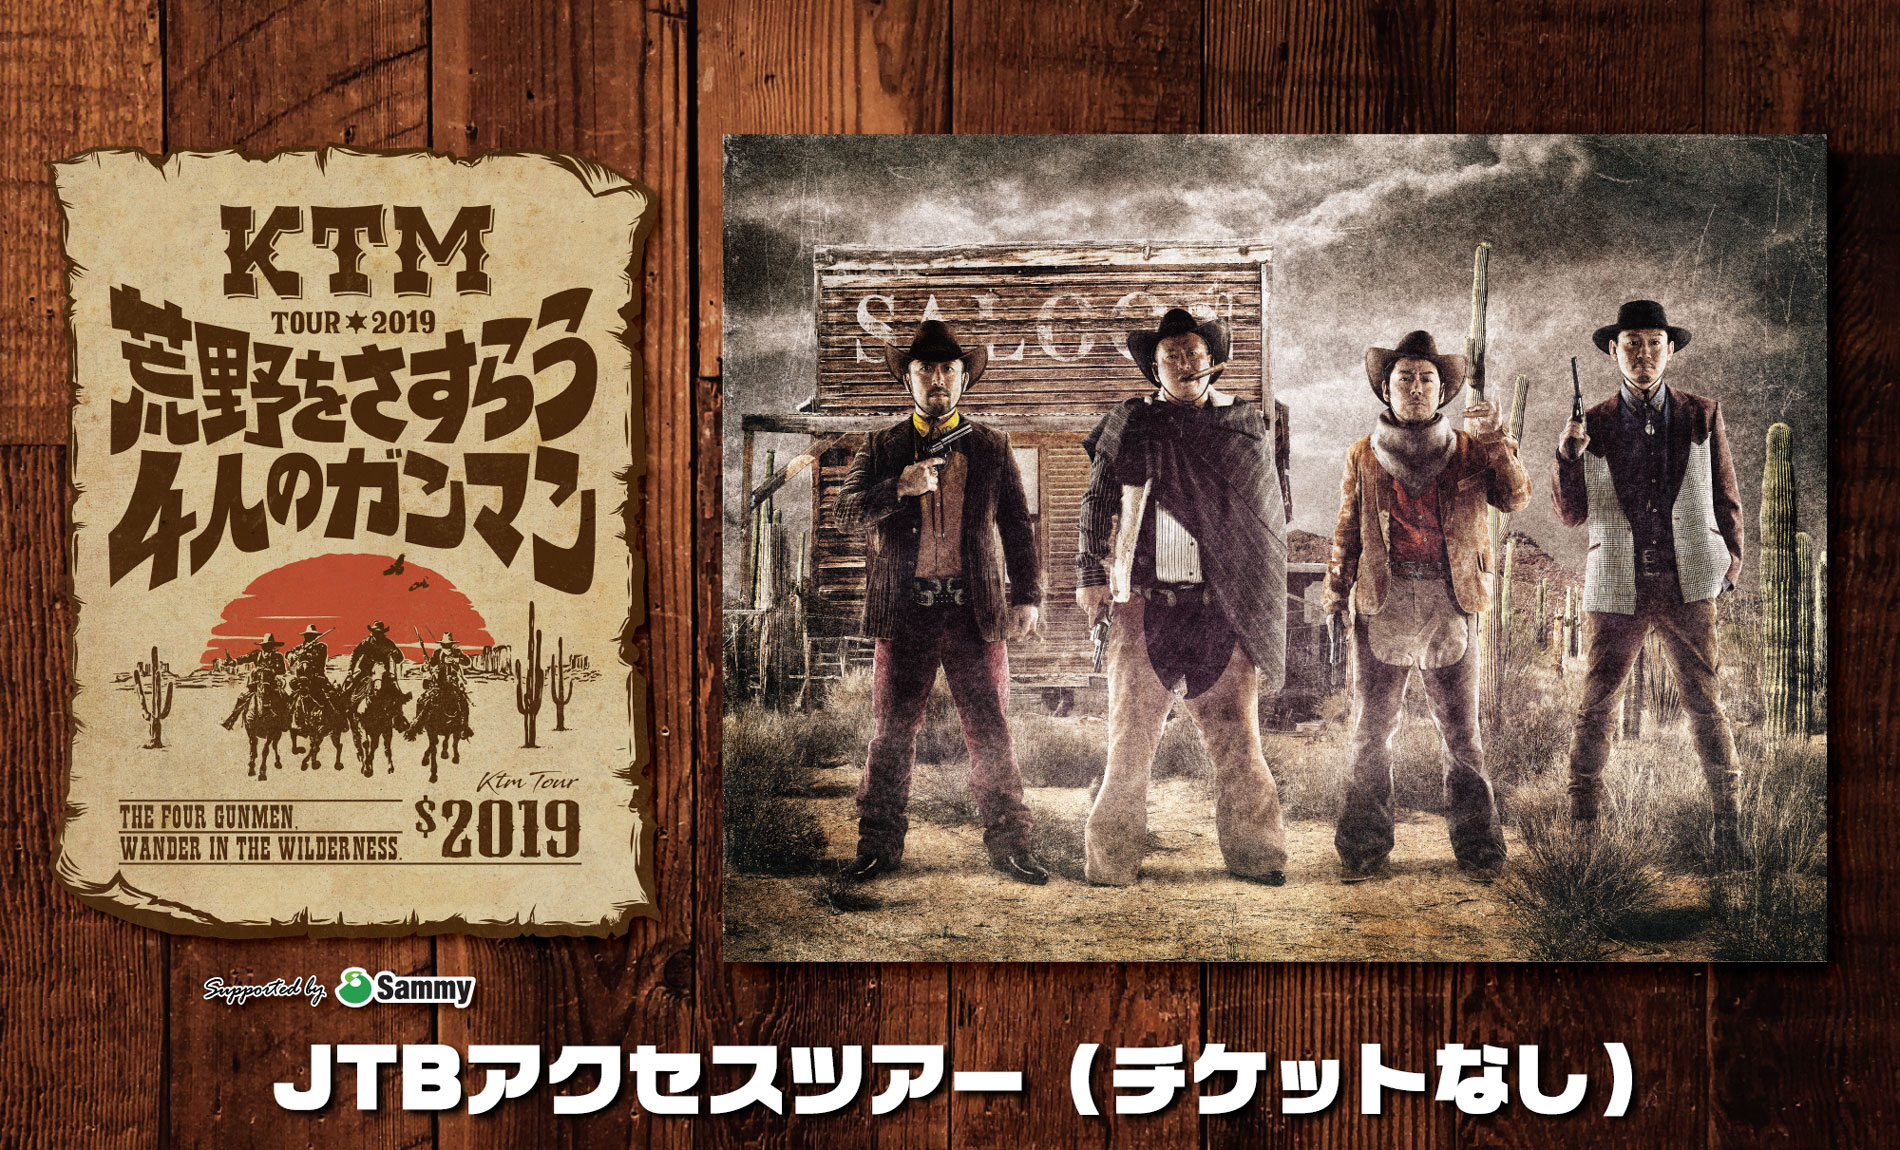 KTM TOUR 2019 荒野をさすらう4人のガンマン  チケット購入者向け(チケットなし) JTBアクセスツアー<